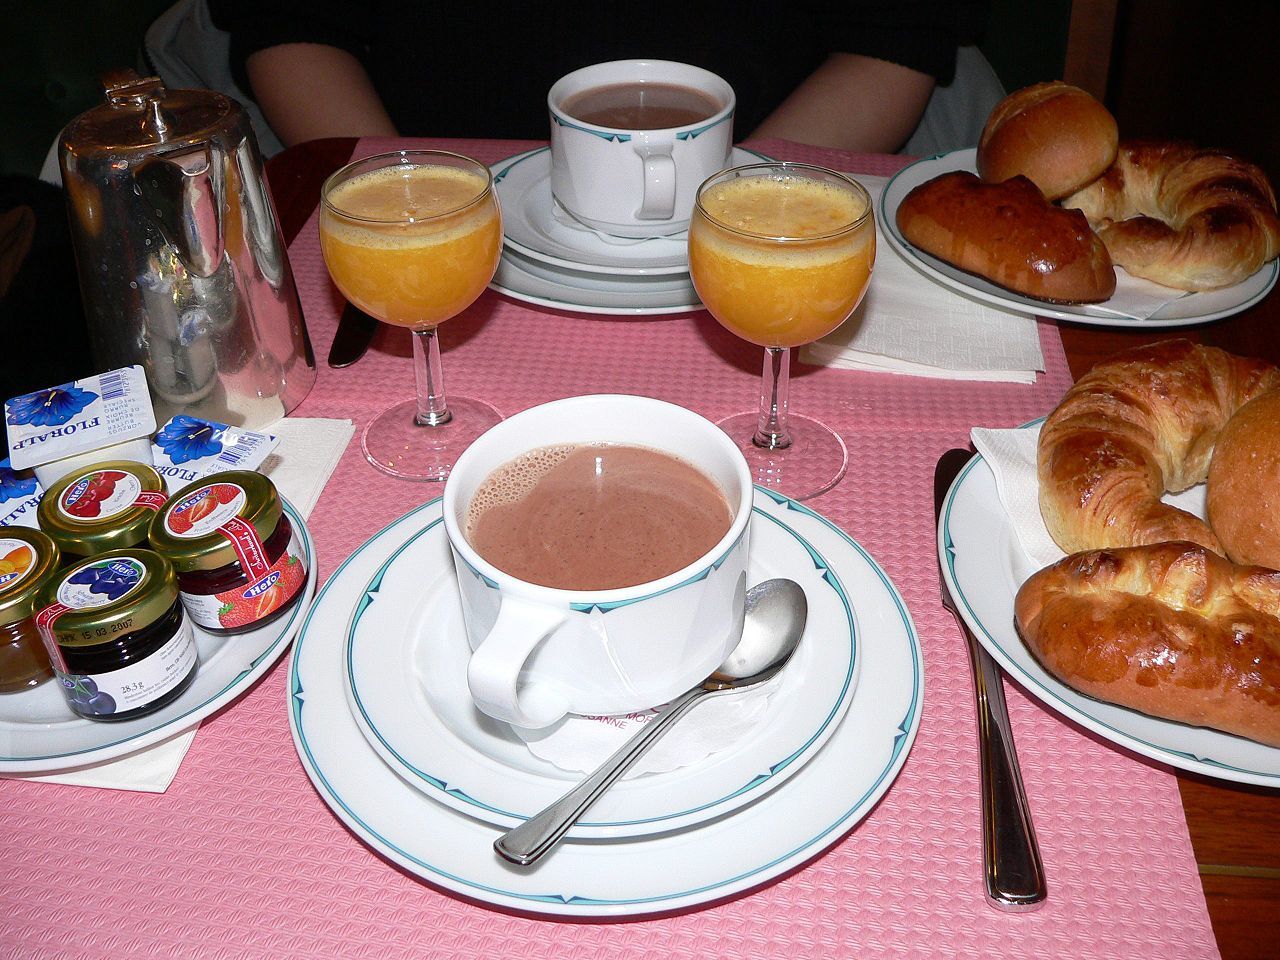 Врач Длин предупреждает: пропуск завтрака может вызвать проблемы с ЖКТ и желчным пузырем